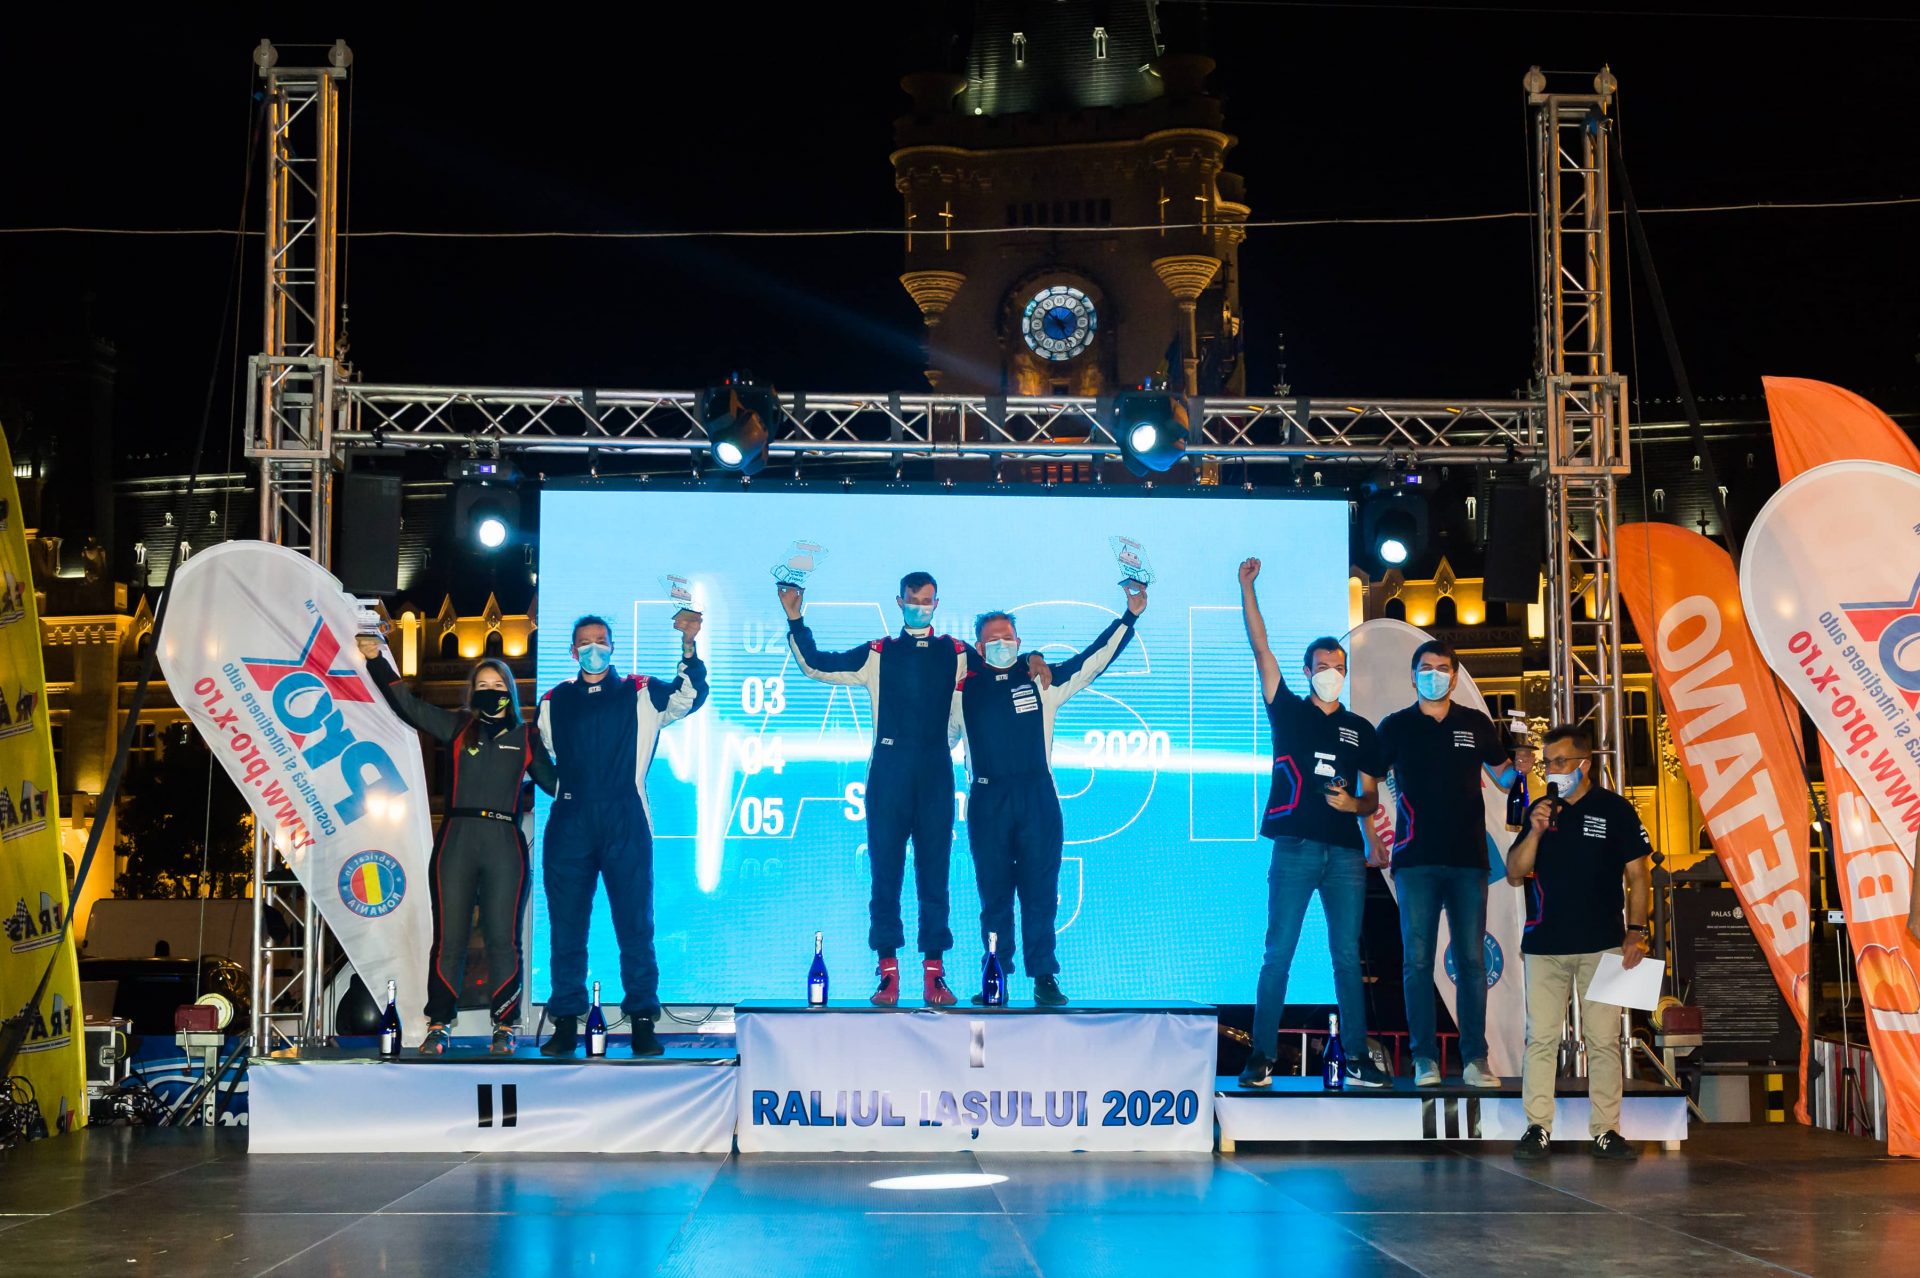 Campionii en titre la Cupa Dacia câștigă Raliul Iașului